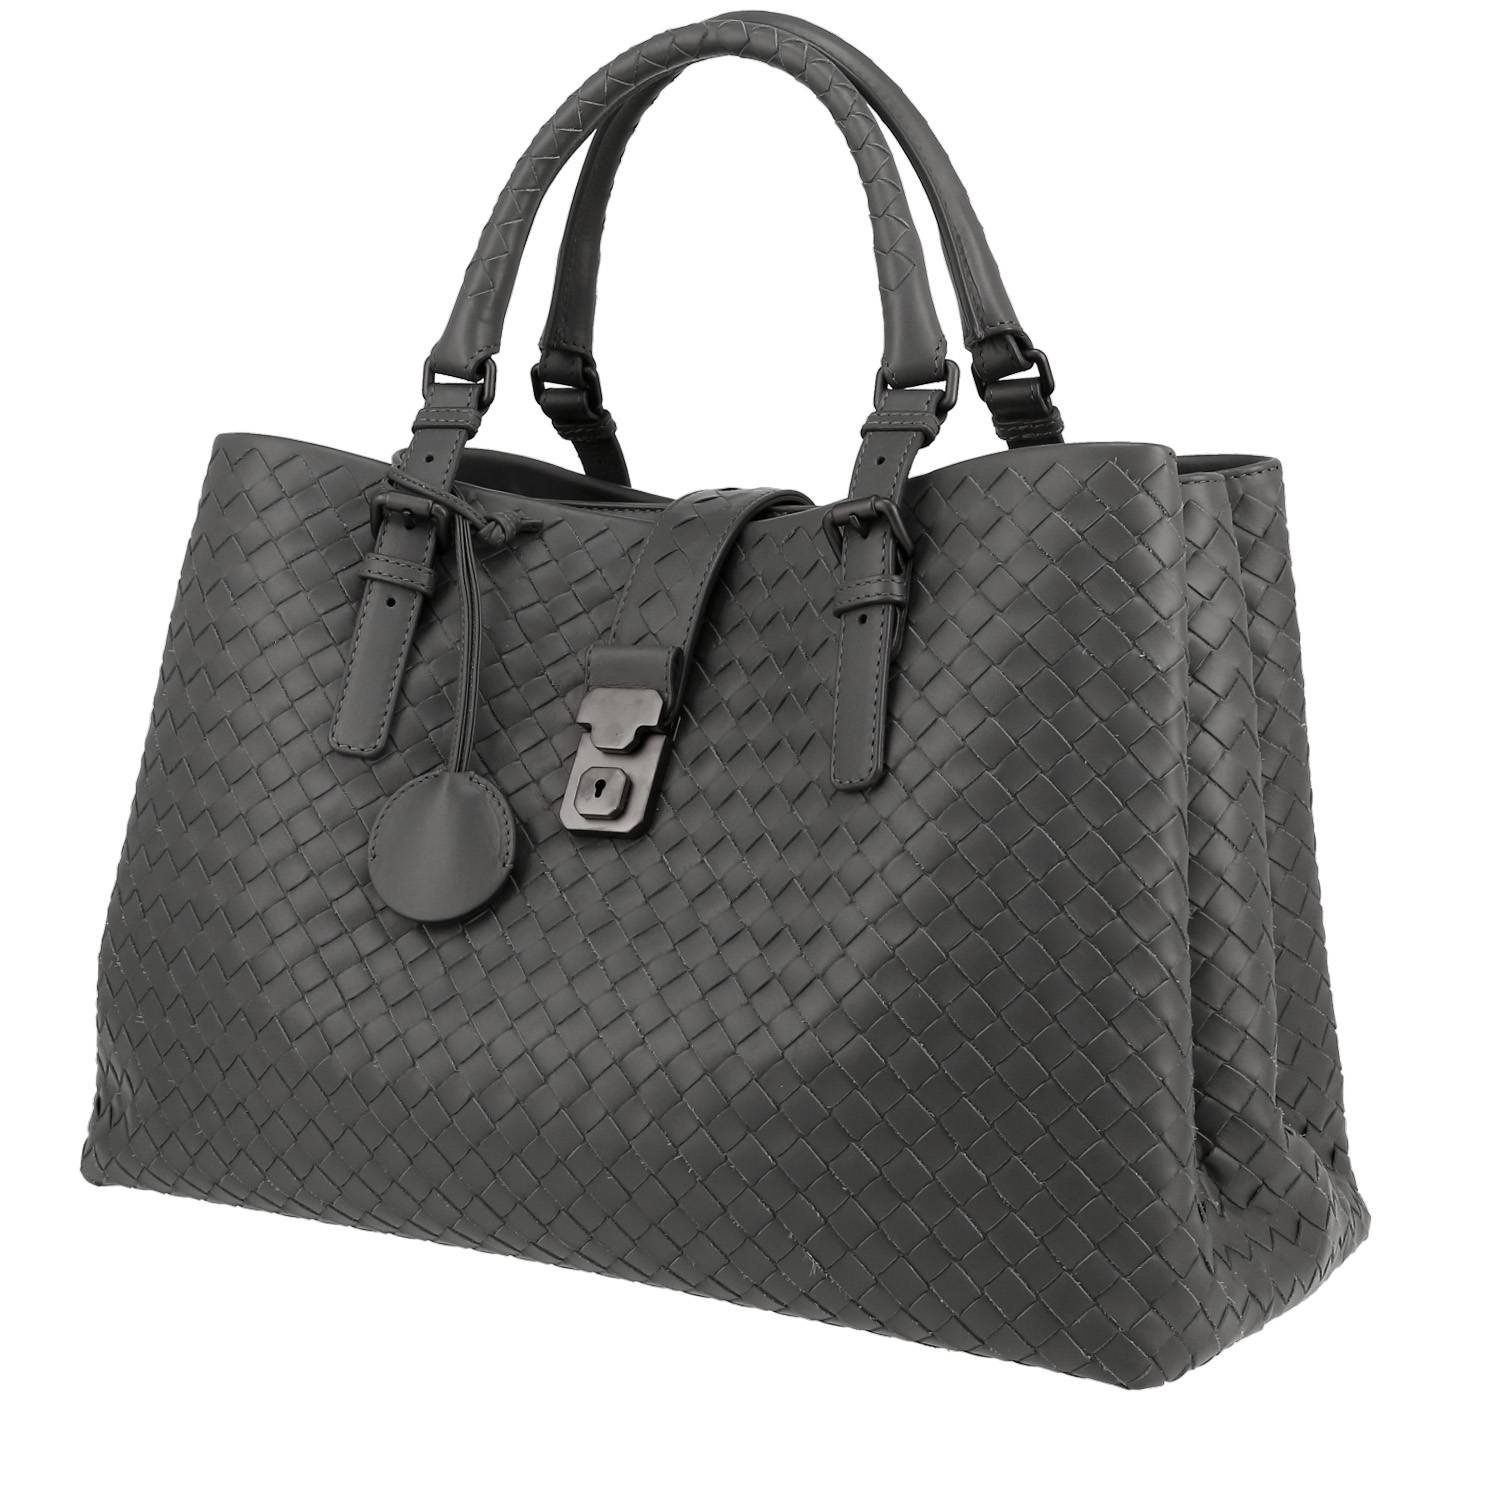 Bottega Veneta Roma handbag in grey intrecciato leather